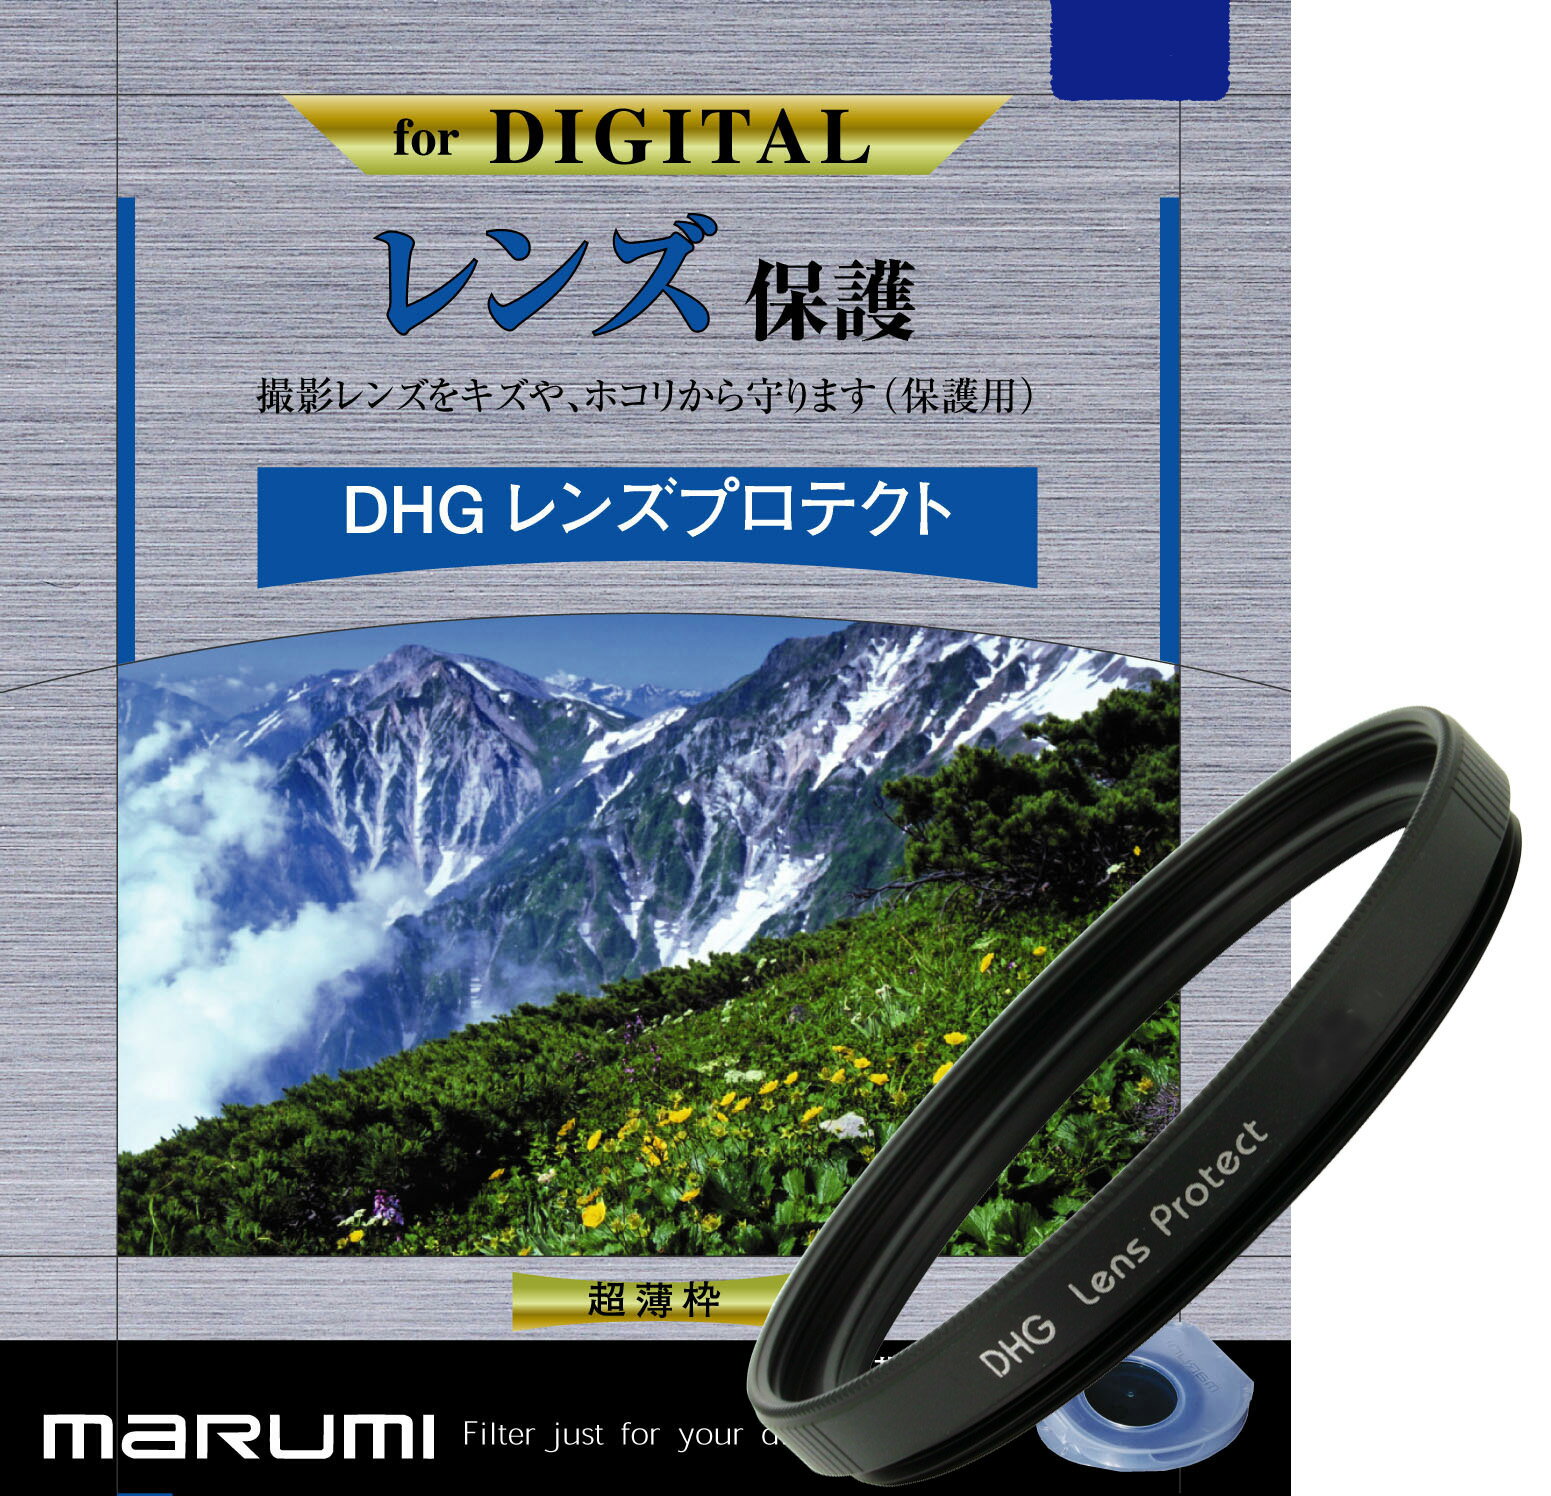 マルミ DHG レンズプロテクト 40.5mm [プロテクター] MARUMI【カメラの八百富】【レンズフィルター】